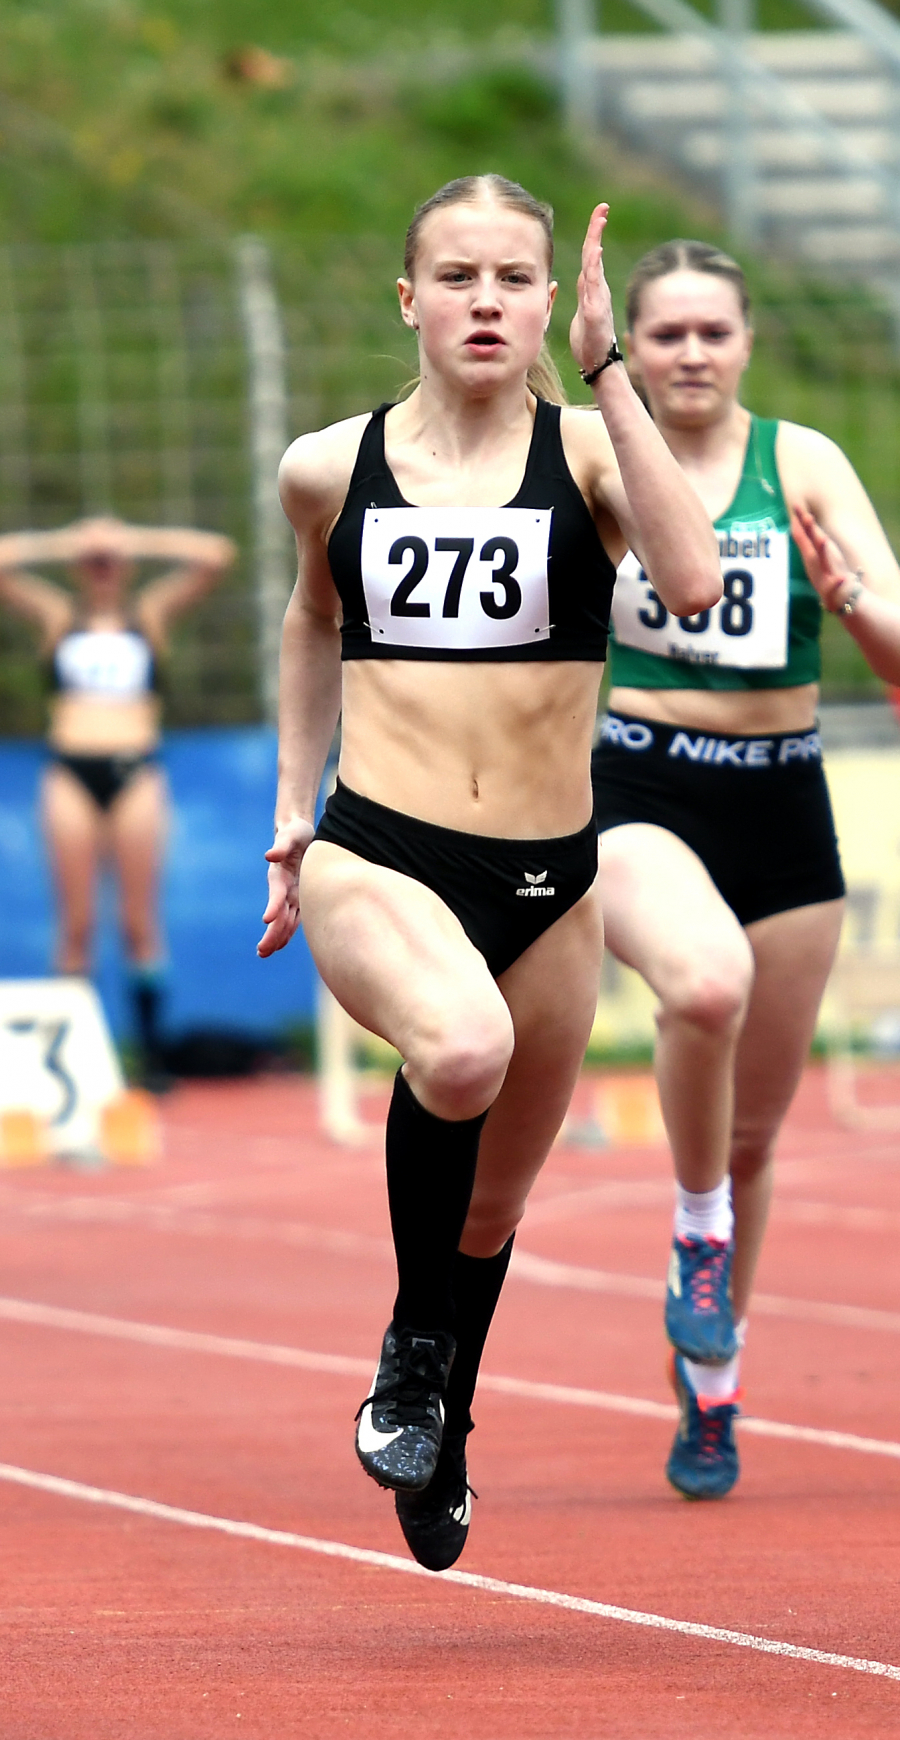 Starke Vorstellung: Sprinttalent Maja Bolinger vom LAZ Soest steigerte sich über 100 Meter auf 12,60 Sekunden und qualifizierte sich bereits beim Saisonstart für die Deutschen U16-Meisterschaften. Foto: Bottin